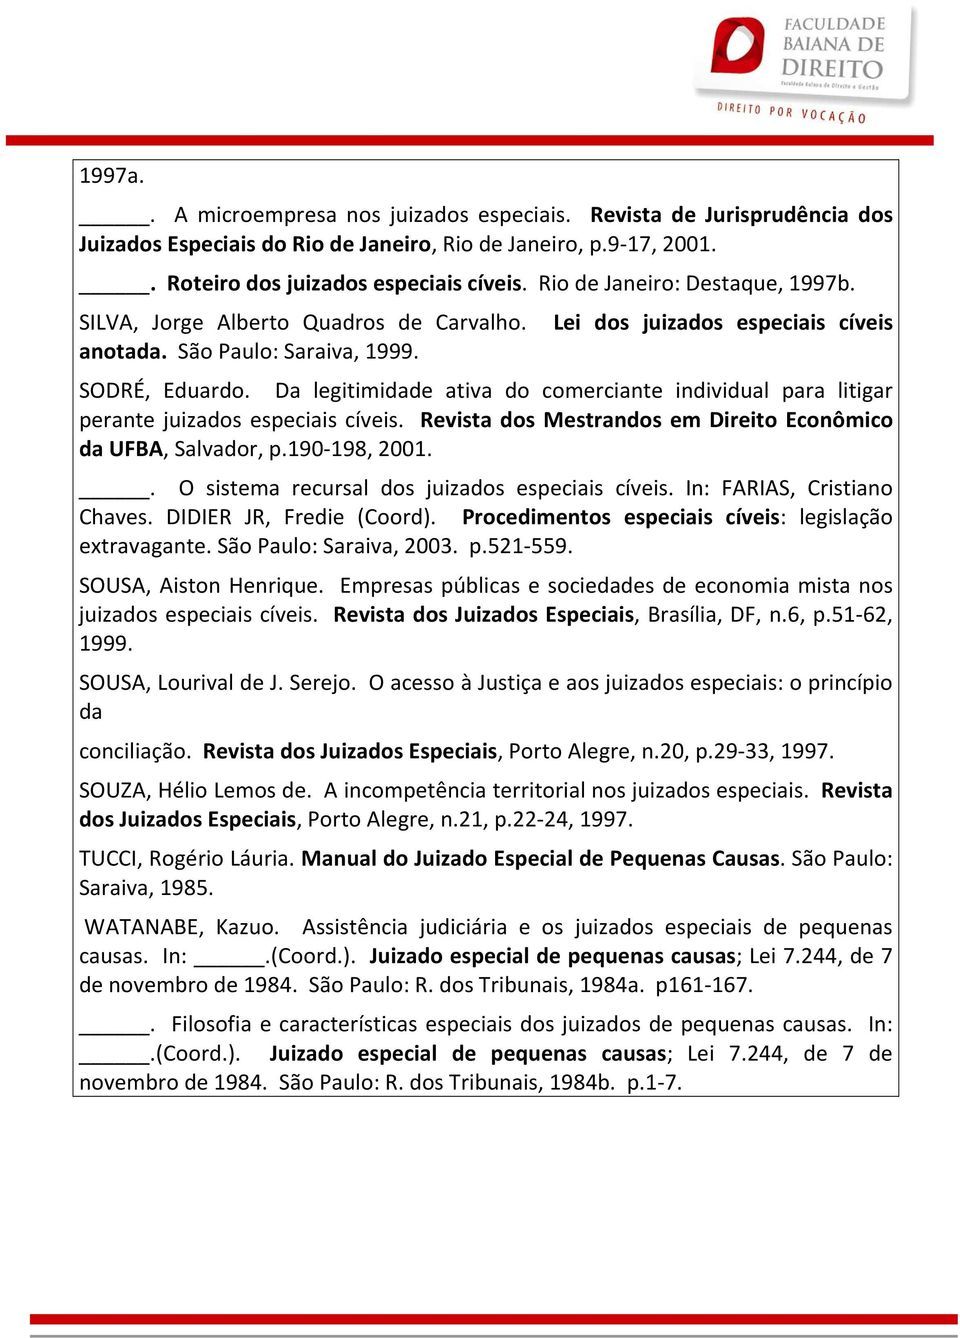 Da legitimidade ativa do comerciante individual para litigar perante juizados especiais cíveis. Revista dos Mestrandos em Direito Econômico da UFBA, Salvador, p.190-198, 2001.